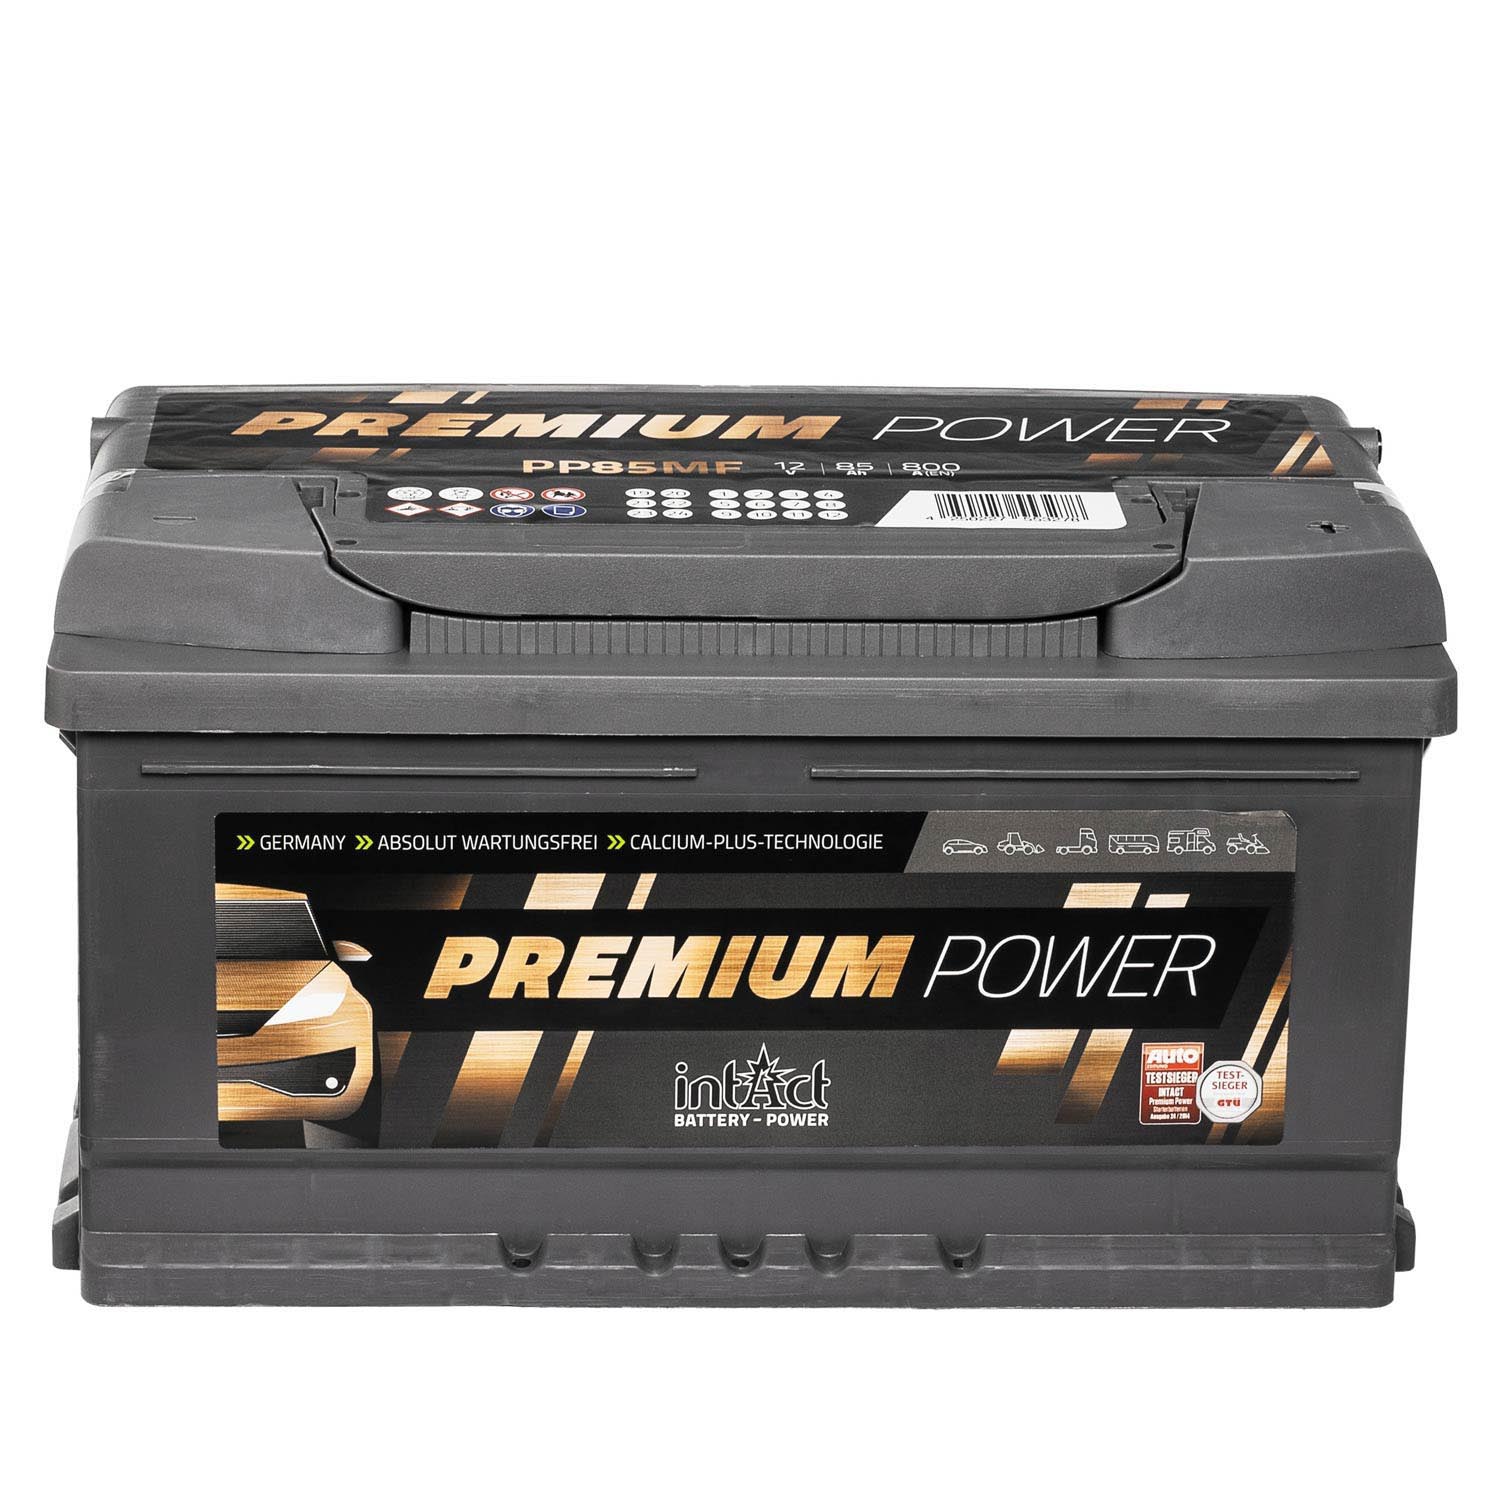 https://batterie24.de/media/image/6d/60/e6/intact-premium-power-pp85mf-autobatterie-12v-85ah-5023-90110-AtLc.jpg